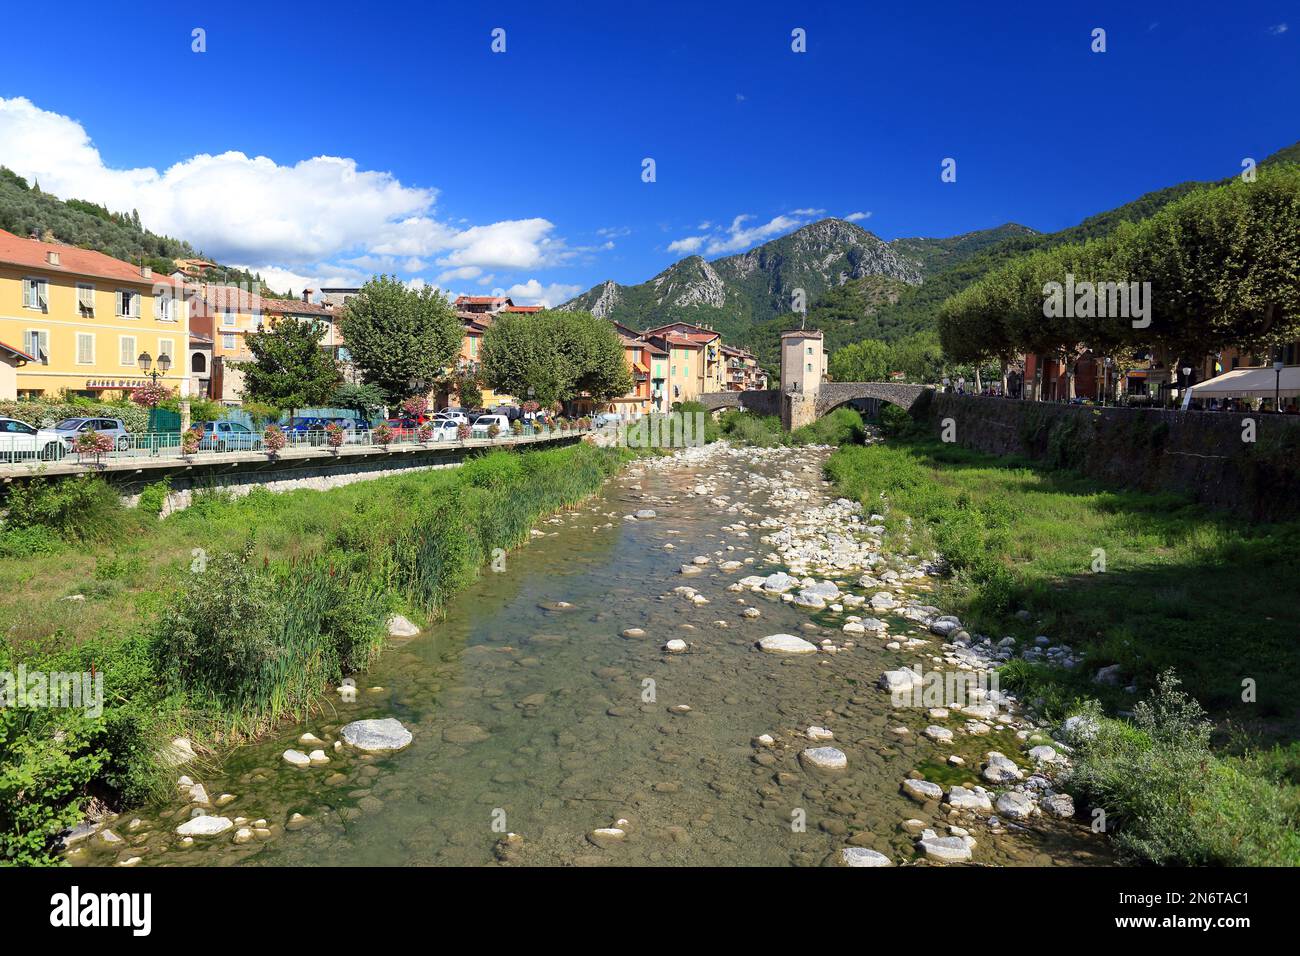 Sospel, vallee de la Bevera, Alpes Maritimes, 06, Cote d'Azur, France Stock Photo